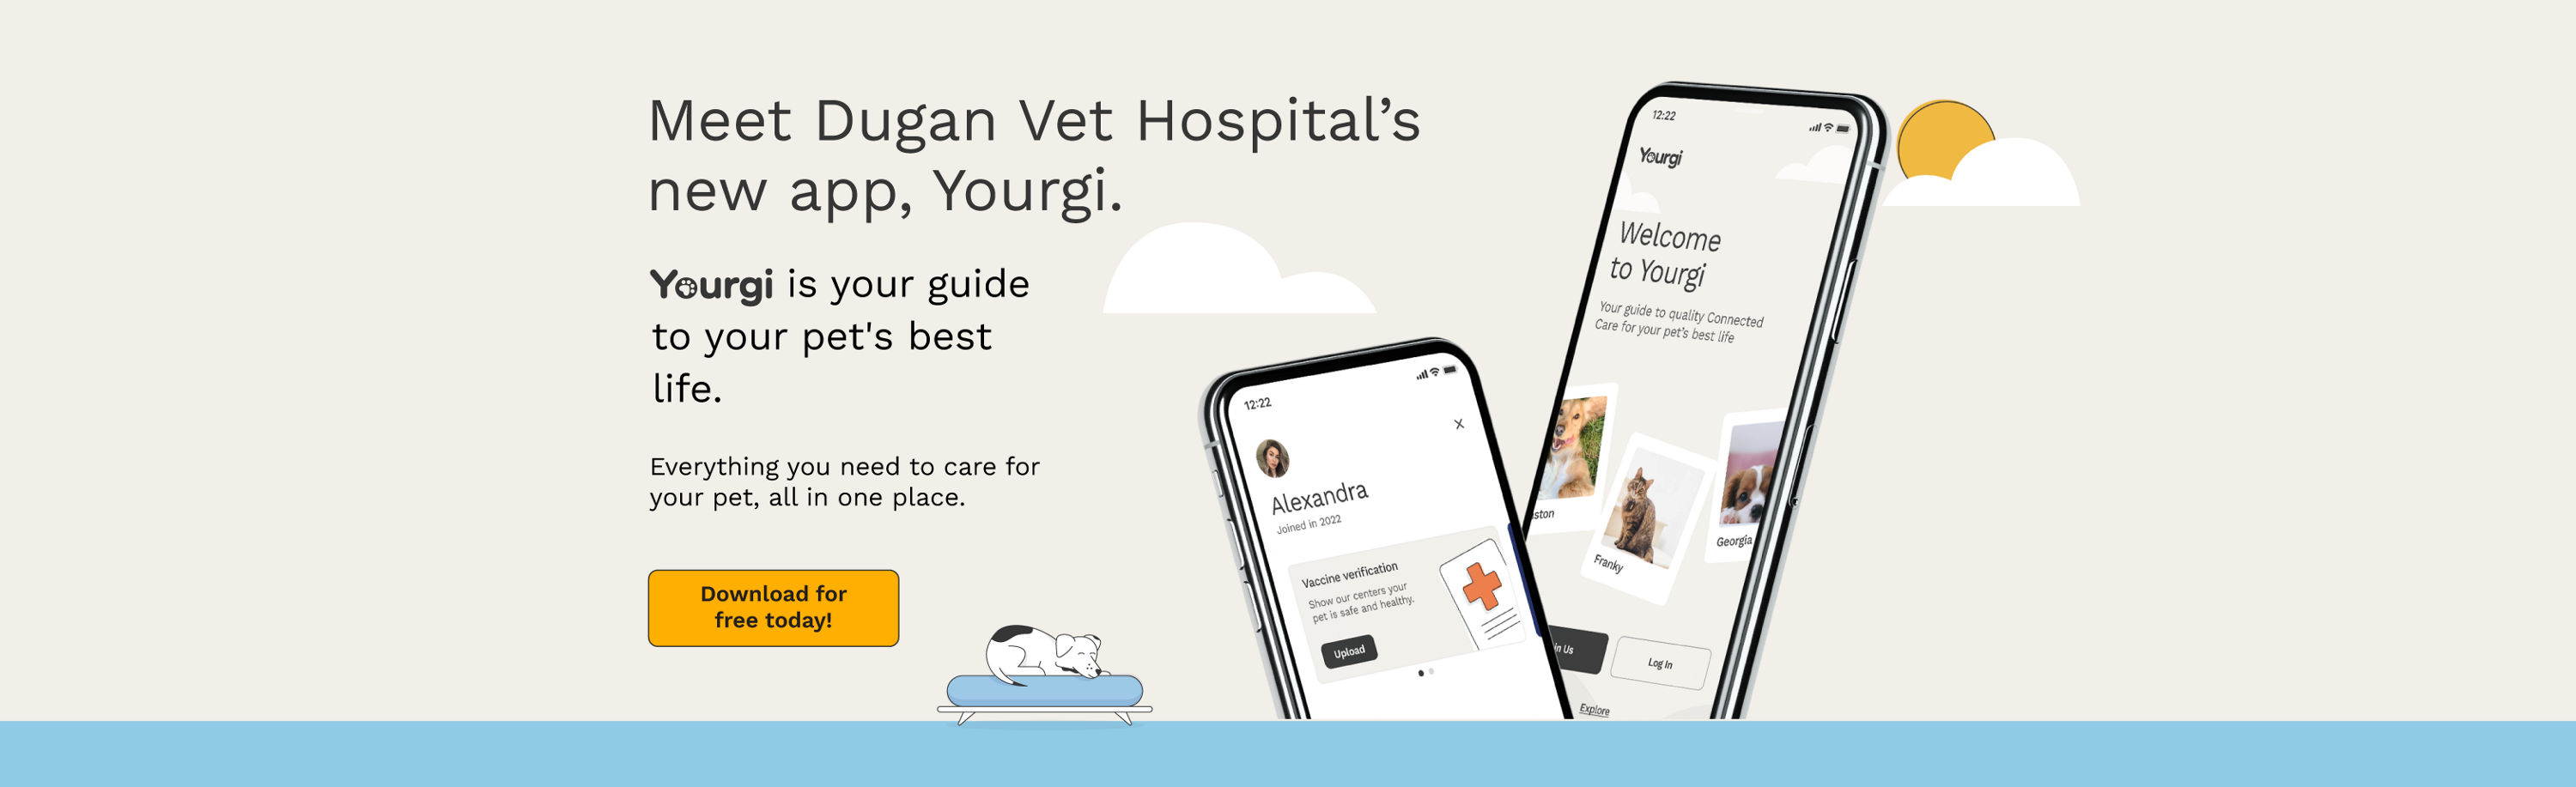 Meet Dugan's Vet Hospital's new app, Yourgi.